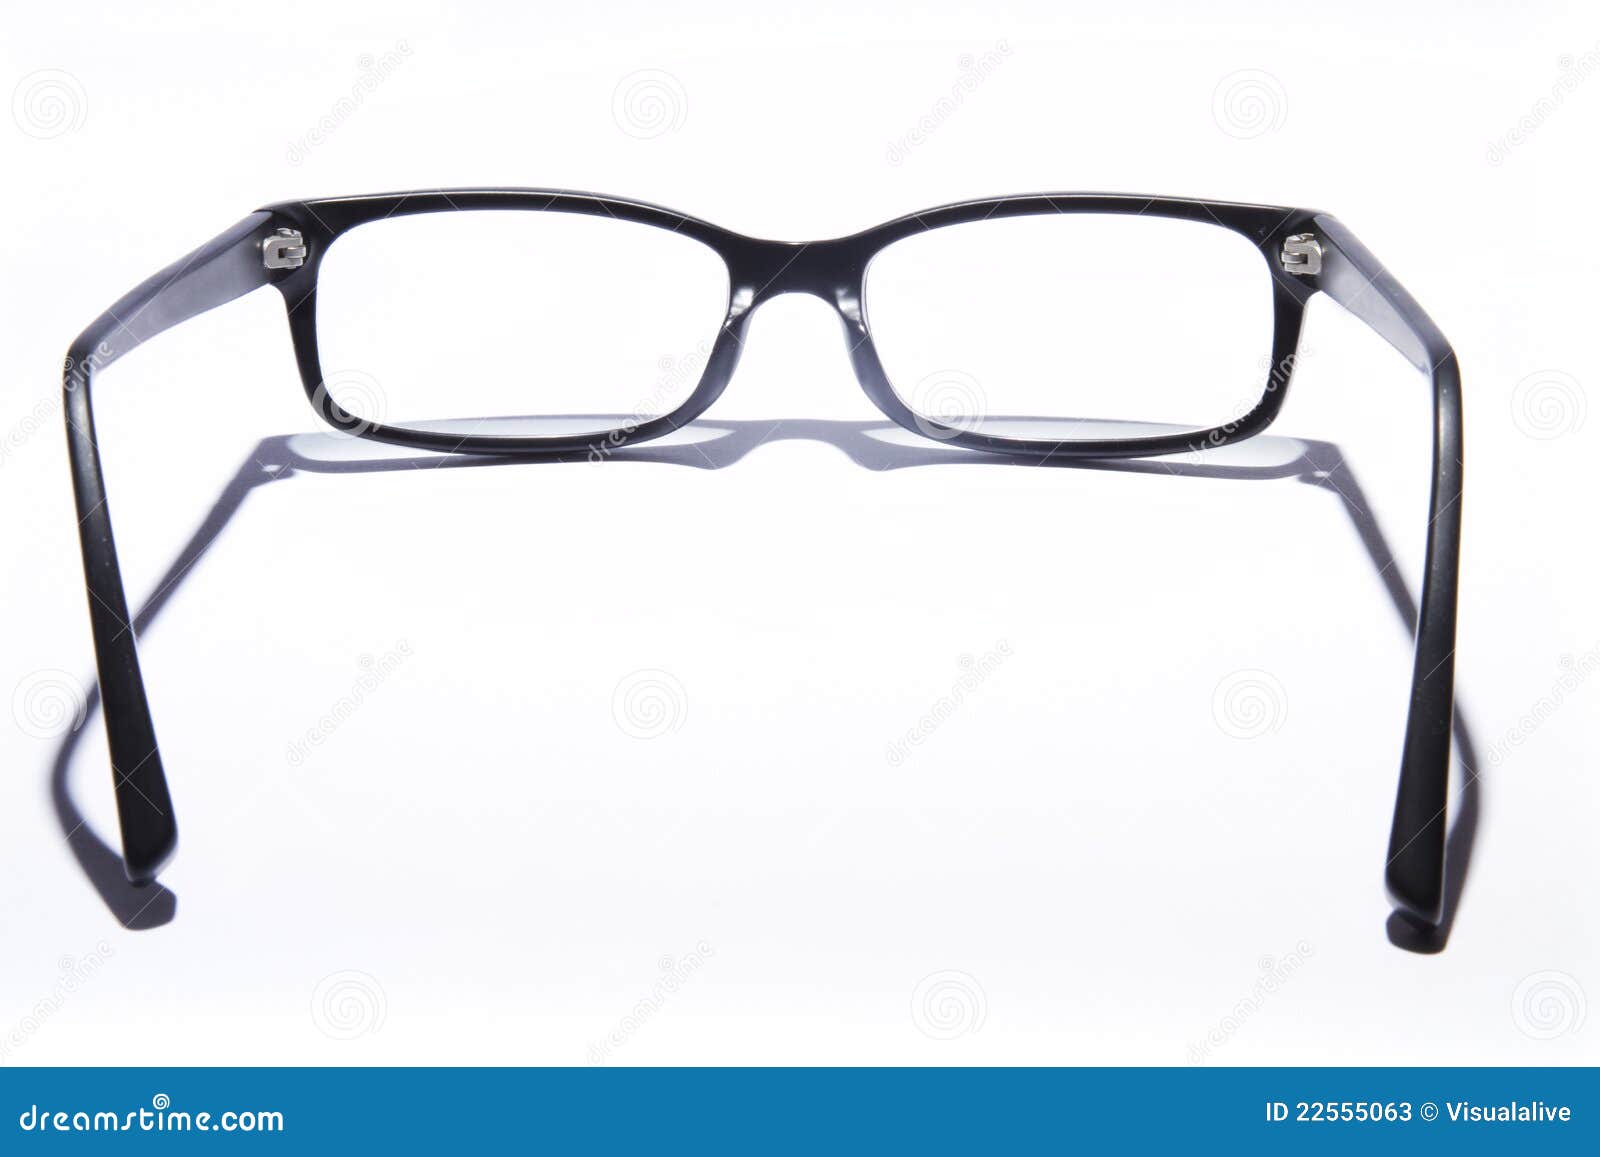 glasses on white